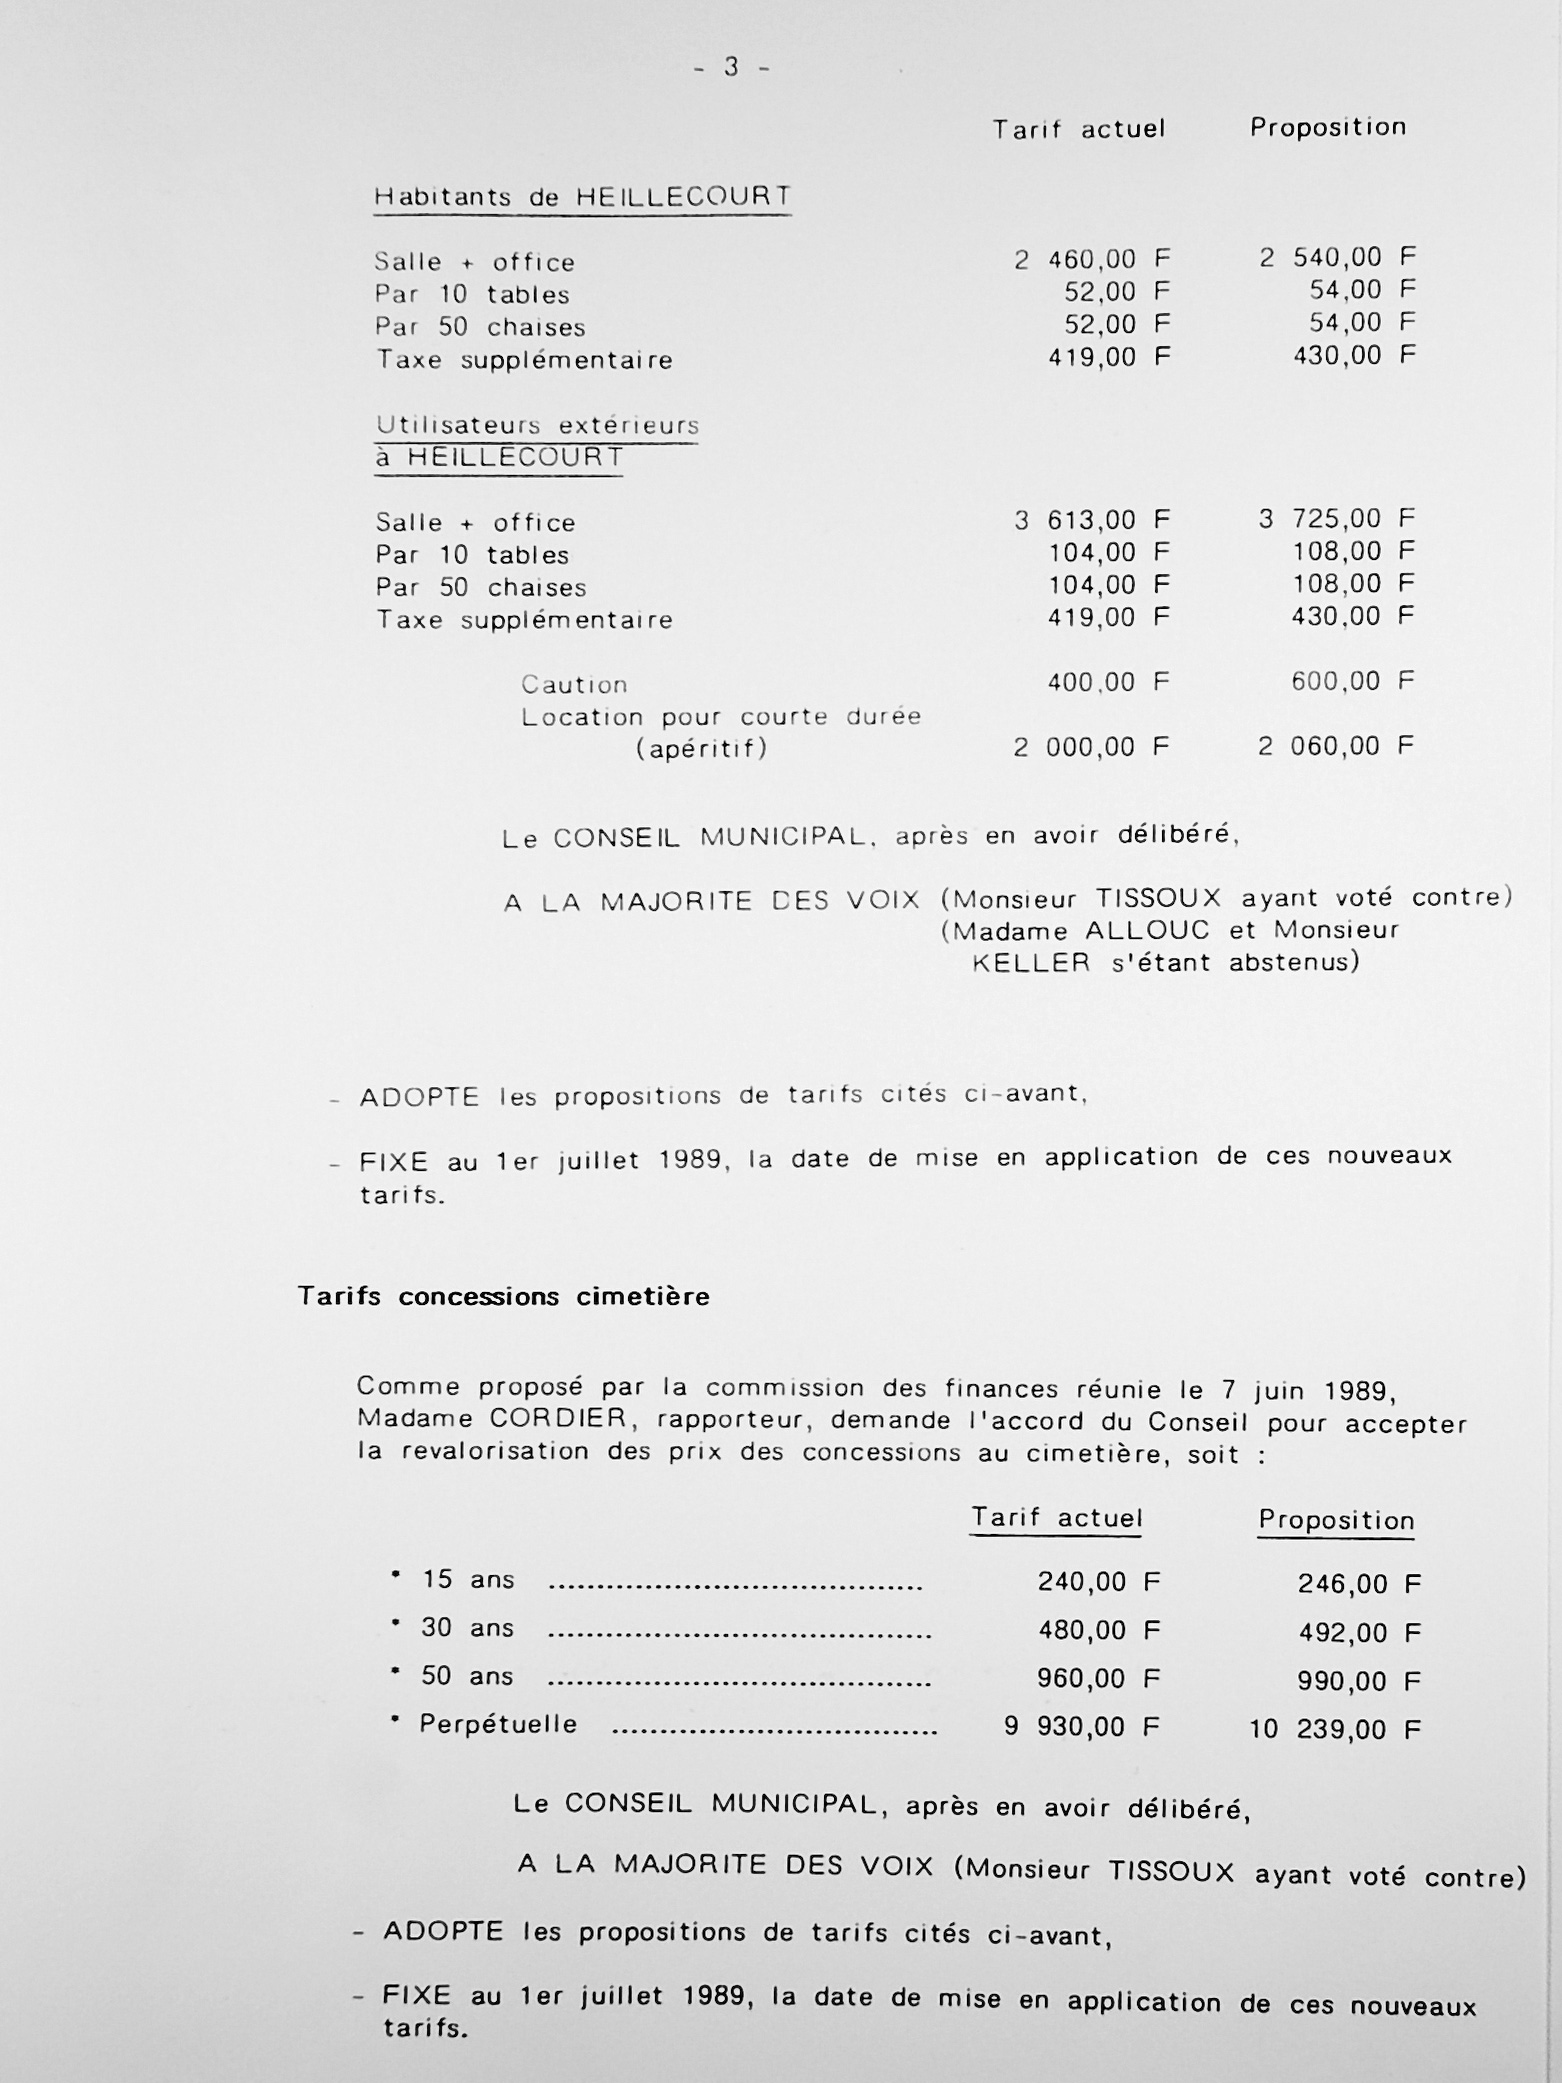 Feuillet_006A-1989-1992.jpg